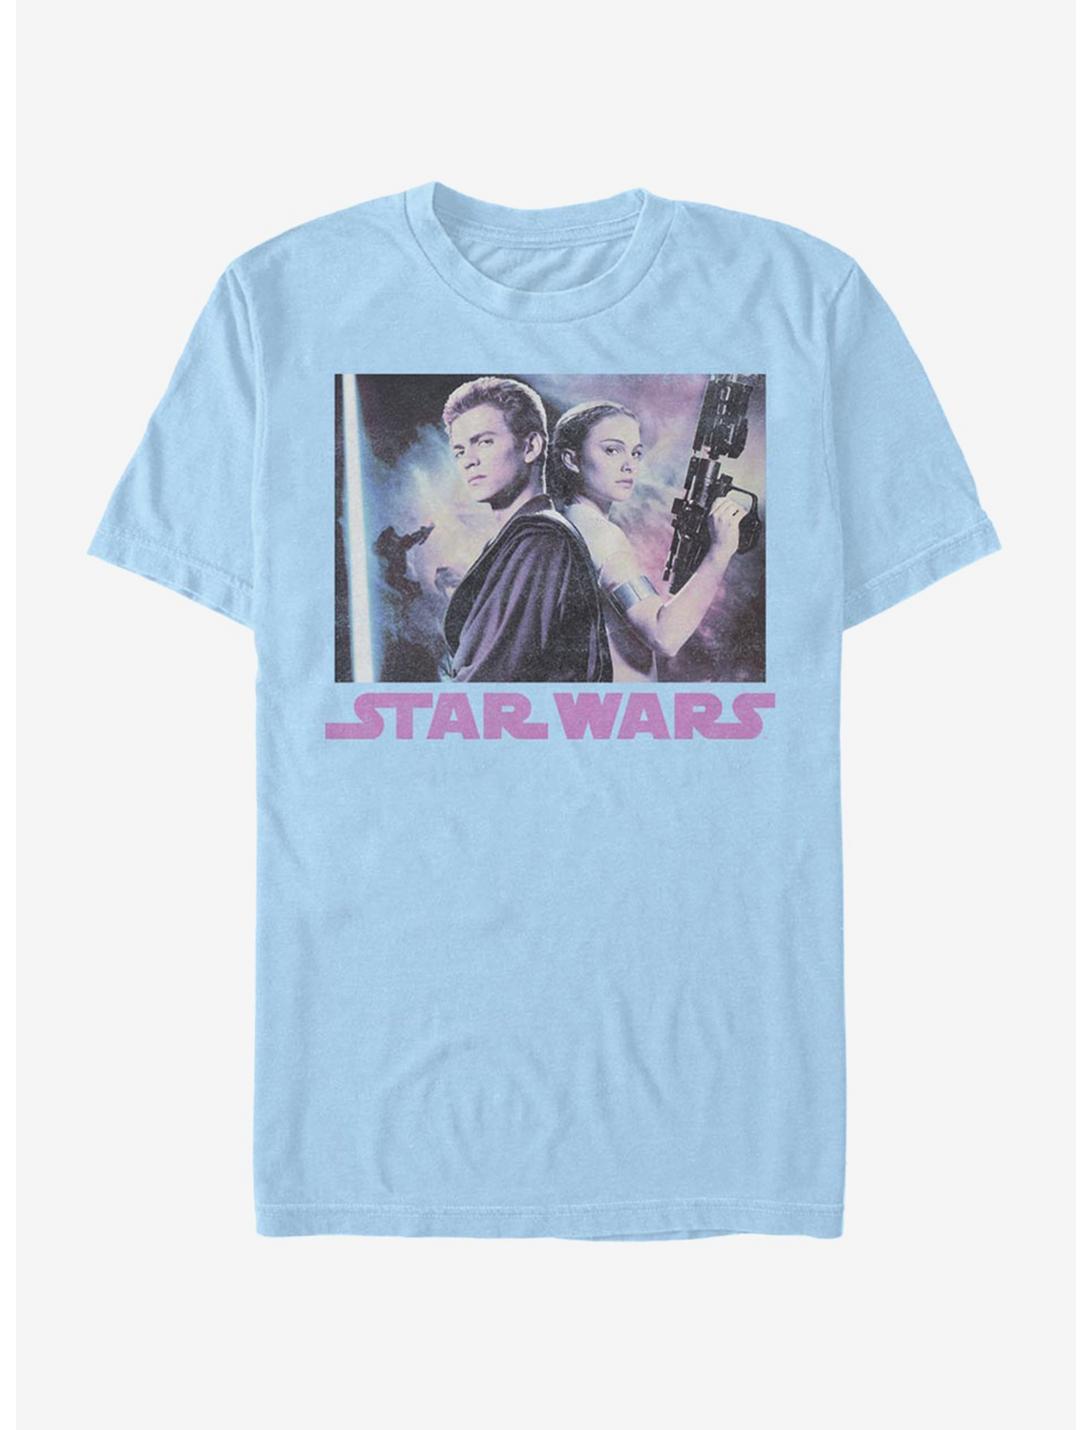 Star Wars Vintage Photo T-Shirt, LT BLUE, hi-res